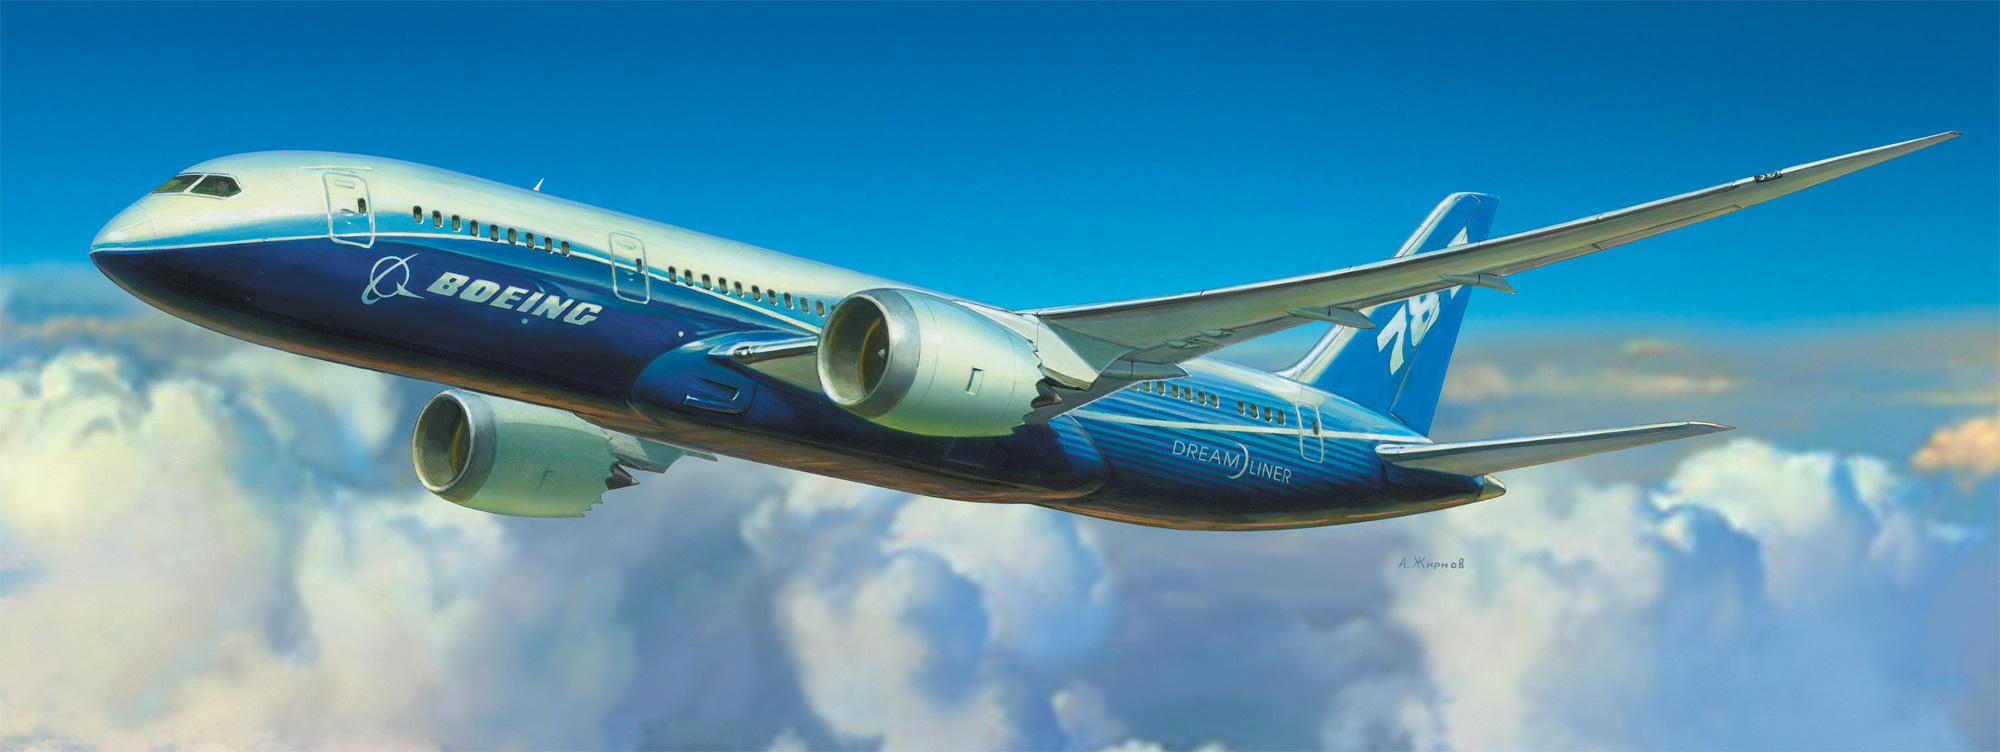 1:144 Civil Airliner Boeing 787-800 Dreamliner